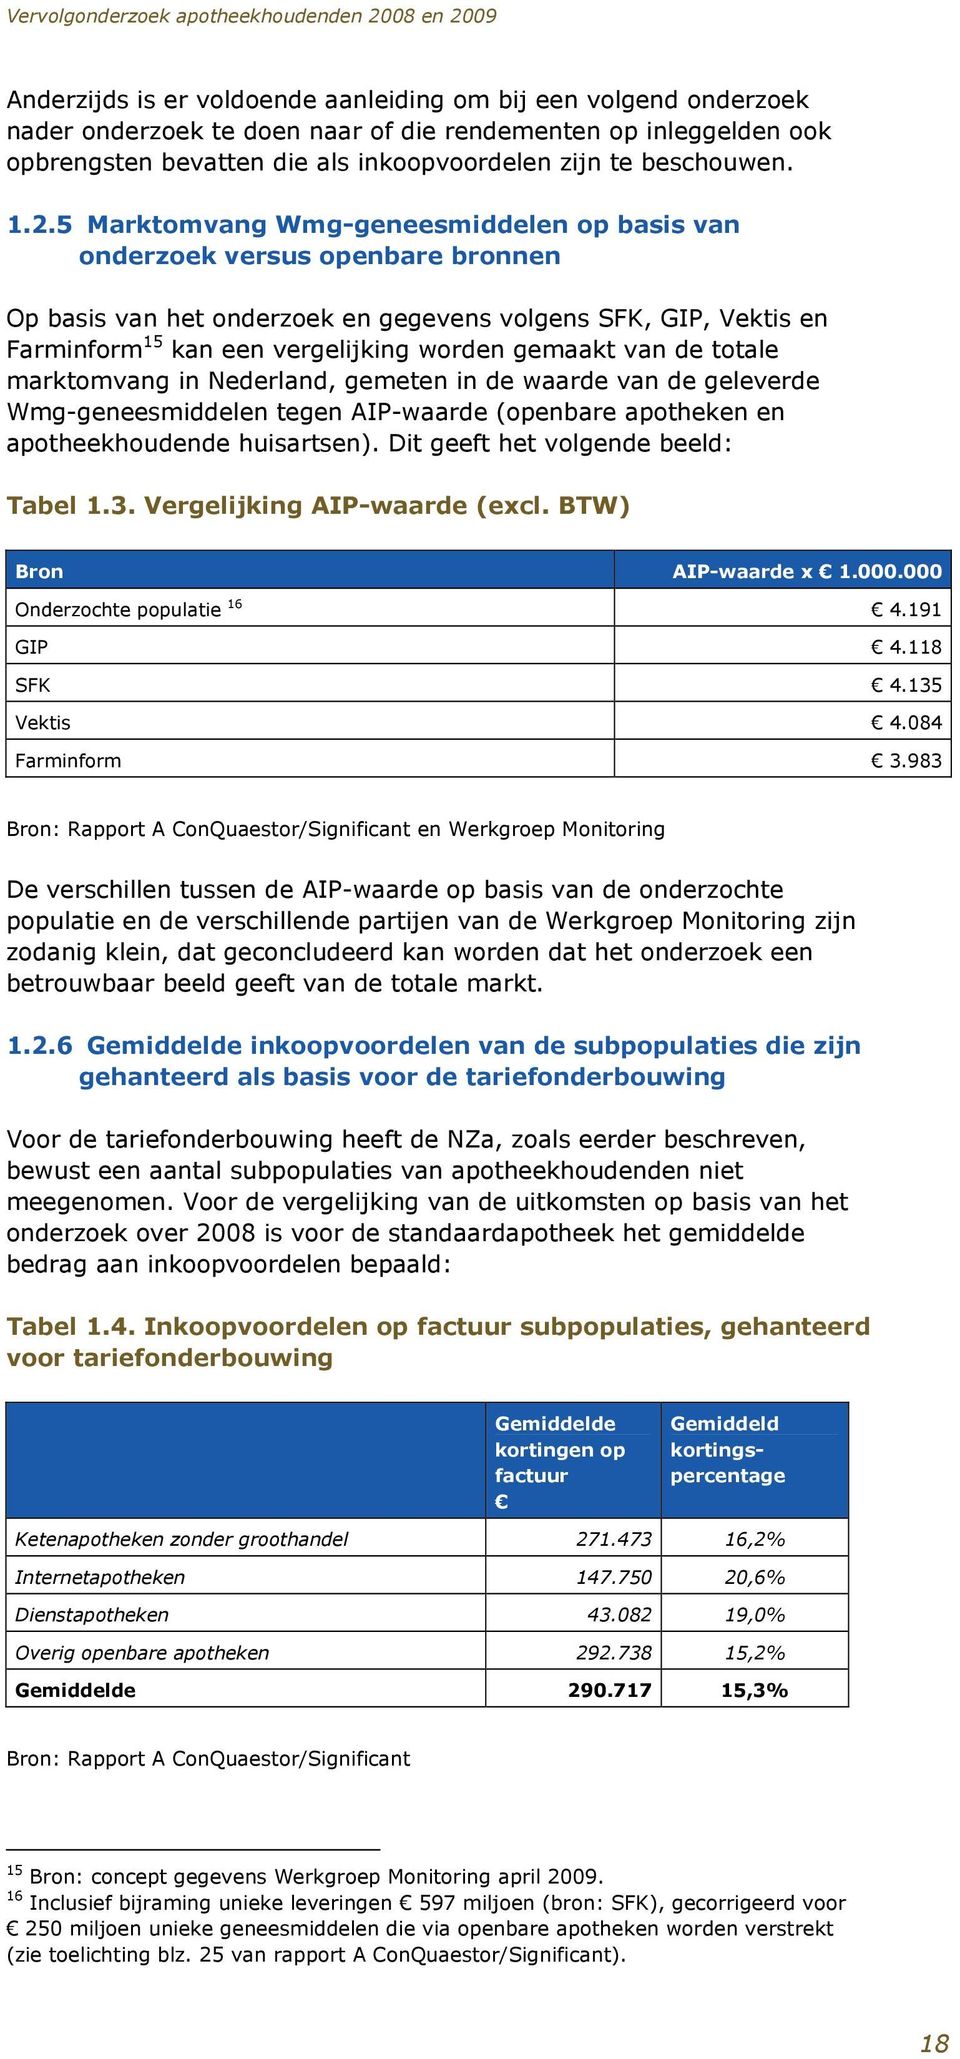 gemaakt van de totale marktomvang in Nederland, gemeten in de waarde van de geleverde Wmg-geneesmiddelen tegen AIP-waarde (openbare apotheken en apotheekhoudende huisartsen).